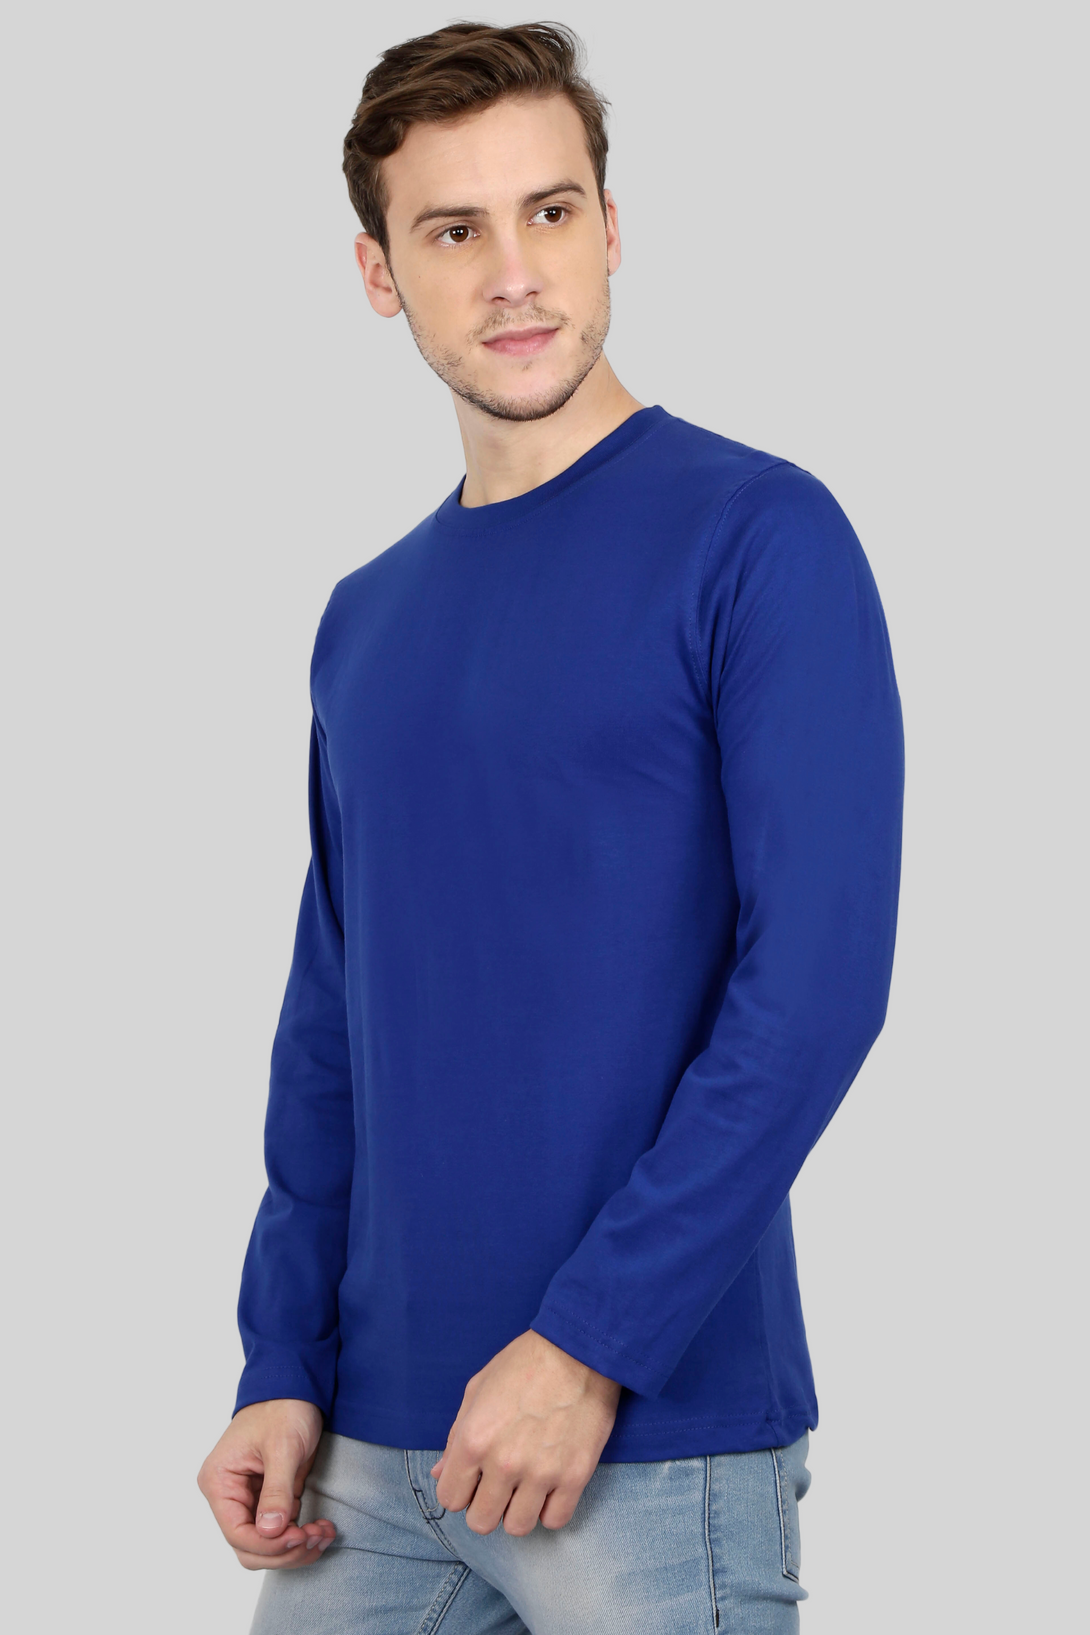 Royal Blue Full Sleeve T-Shirt For Men - WowWaves - 8